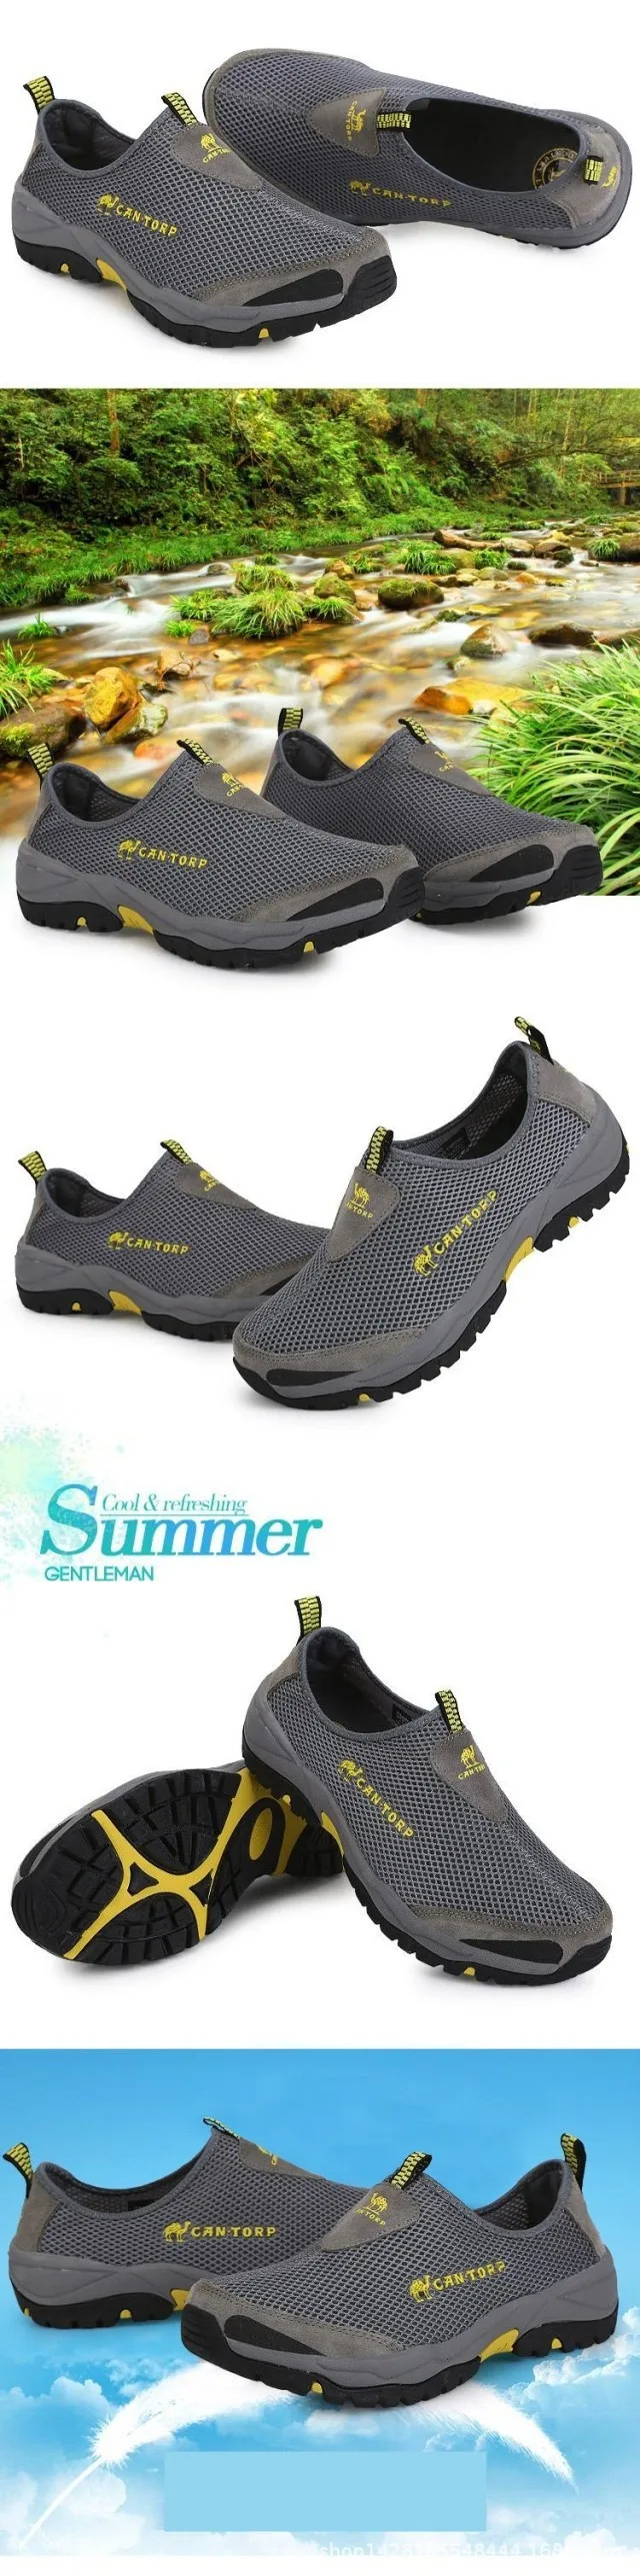 Aqua уличная походная обувь мужская обувь спортивная обувь для альпинизма 2018 Летний стиль трекинговая обувь без шнуровки прогулочная